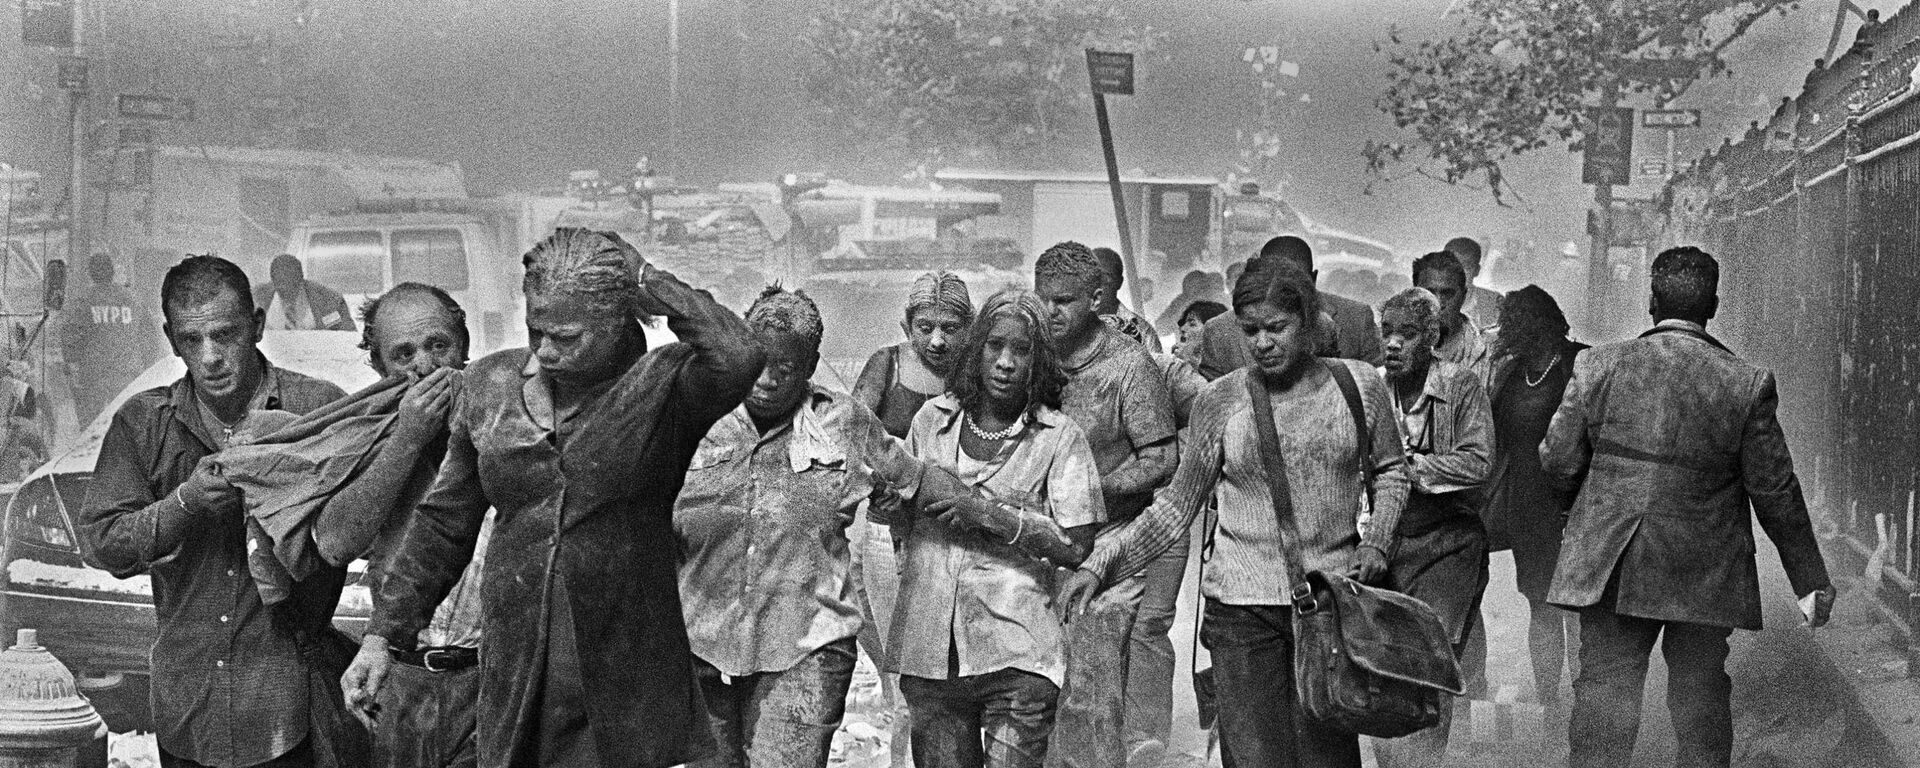 Выжившие после террористических атак на Всемирный торговый центр в Нью-Йорке, 11 сентября 2001 года  - Sputnik Молдова, 1920, 11.09.2020